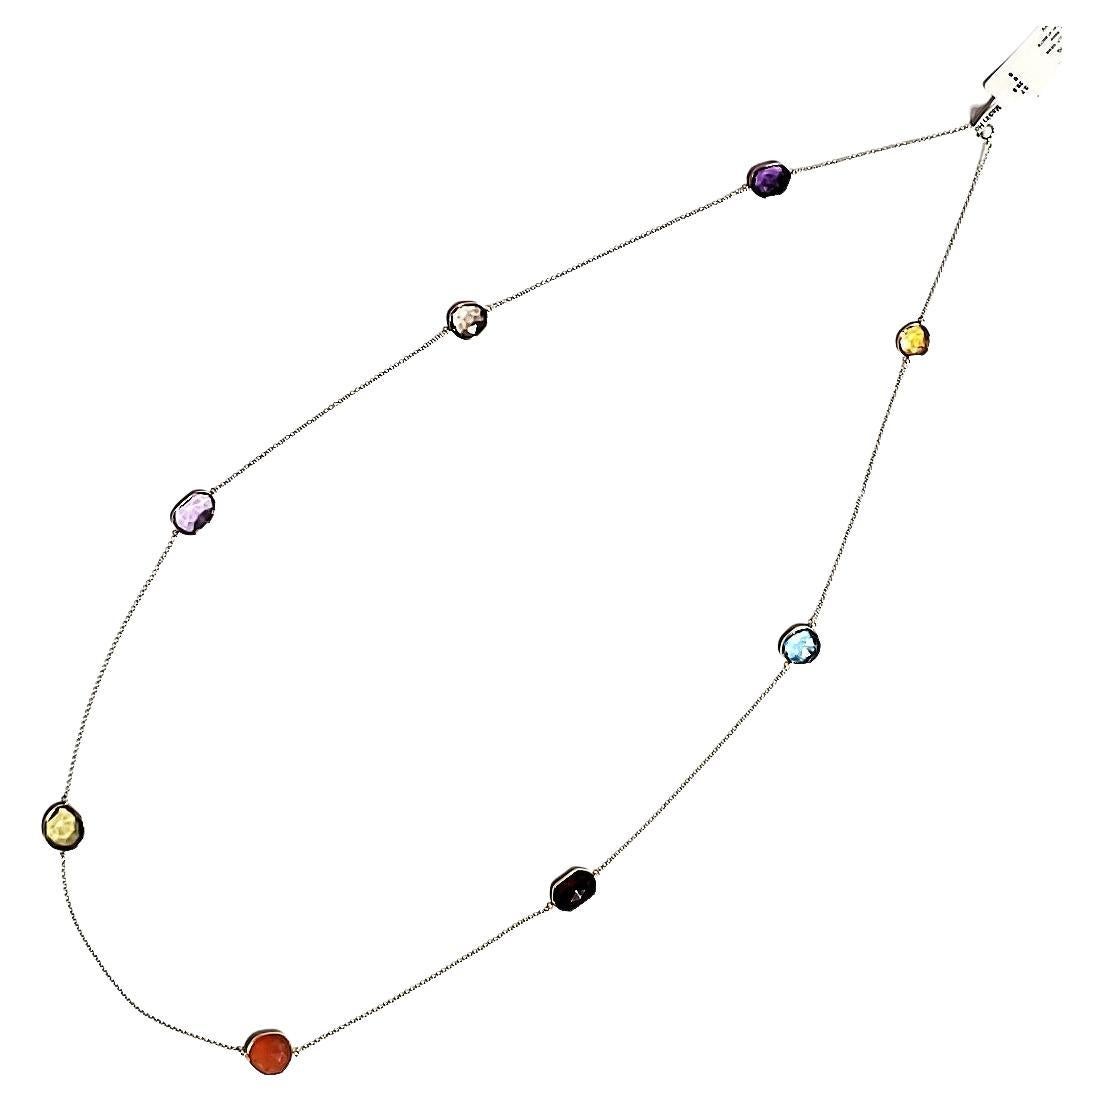 EJ 1478

Collier multicolore de 8 pierres en or 18 K. (Code boursier EJ  1478) 

Entourez-vous des joyaux du monde ! Un fascinant éventail de trésors colorés, facettés et taillés en rose sur une chaîne en or 18 K ! 

Chaque pierre a ses propres